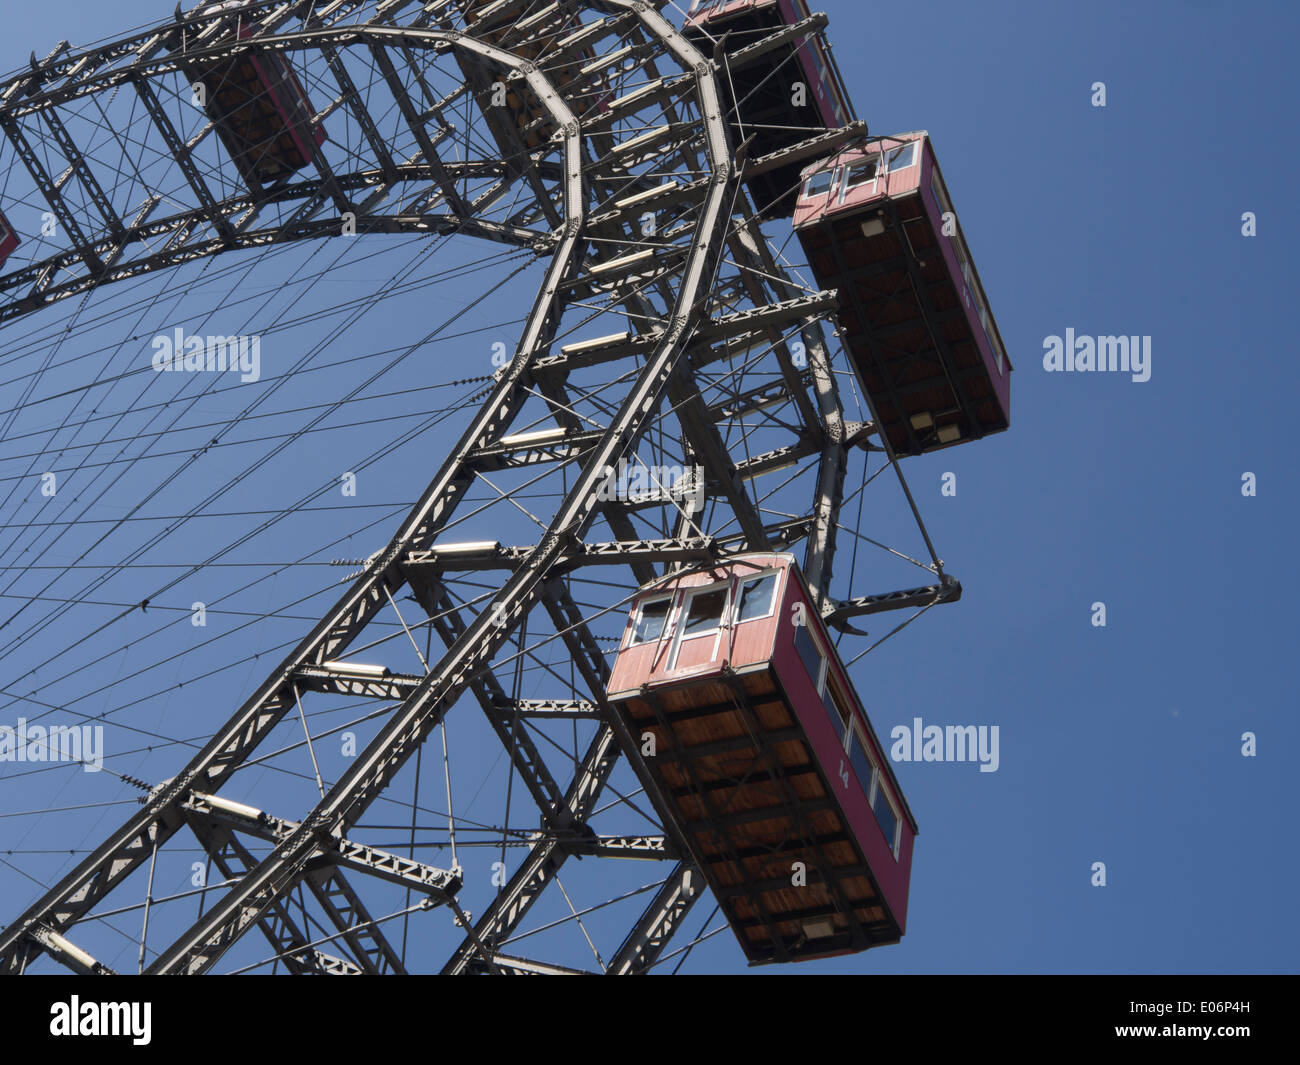 Wiener Riesenrad, grande roue dans le parc d'attractions Prater, construite en 1897 sur 65 mètres de haut, Vienne Autriche Banque D'Images